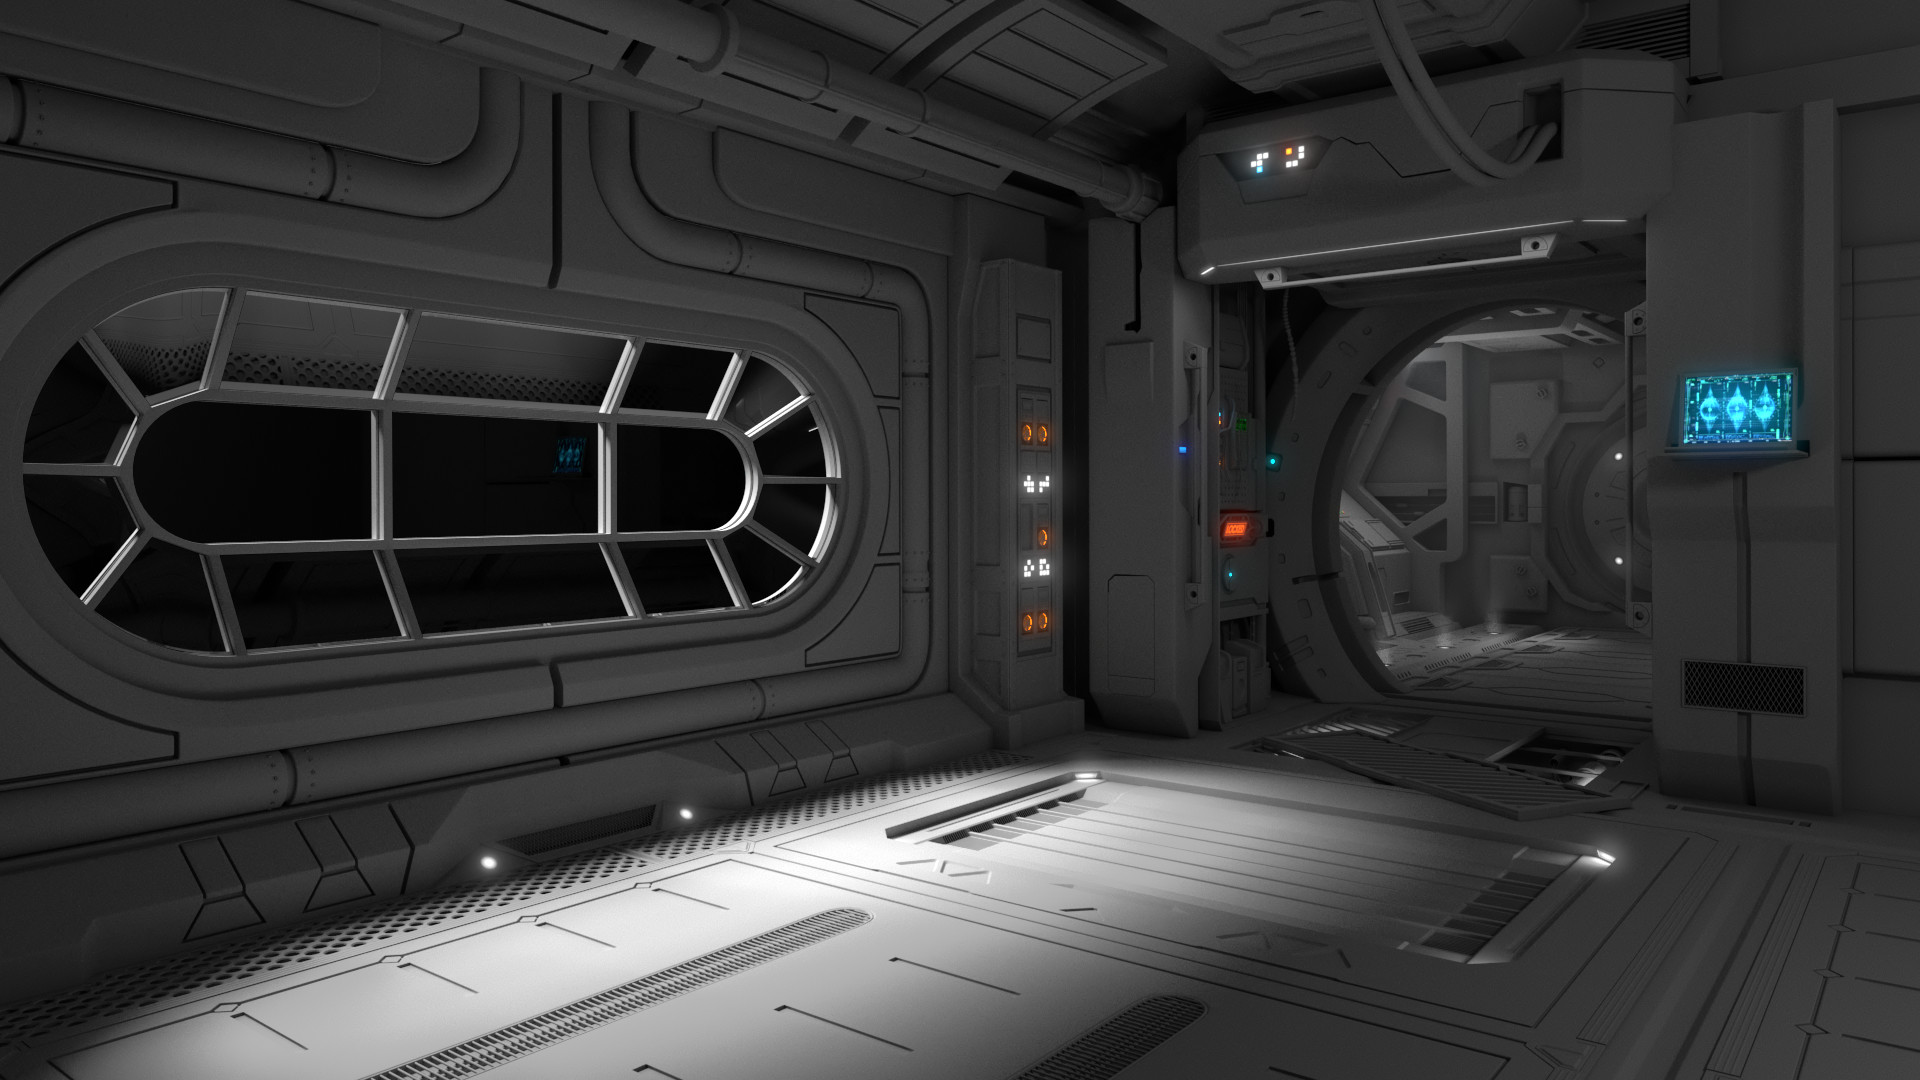 ArtStation - Spaceship interior